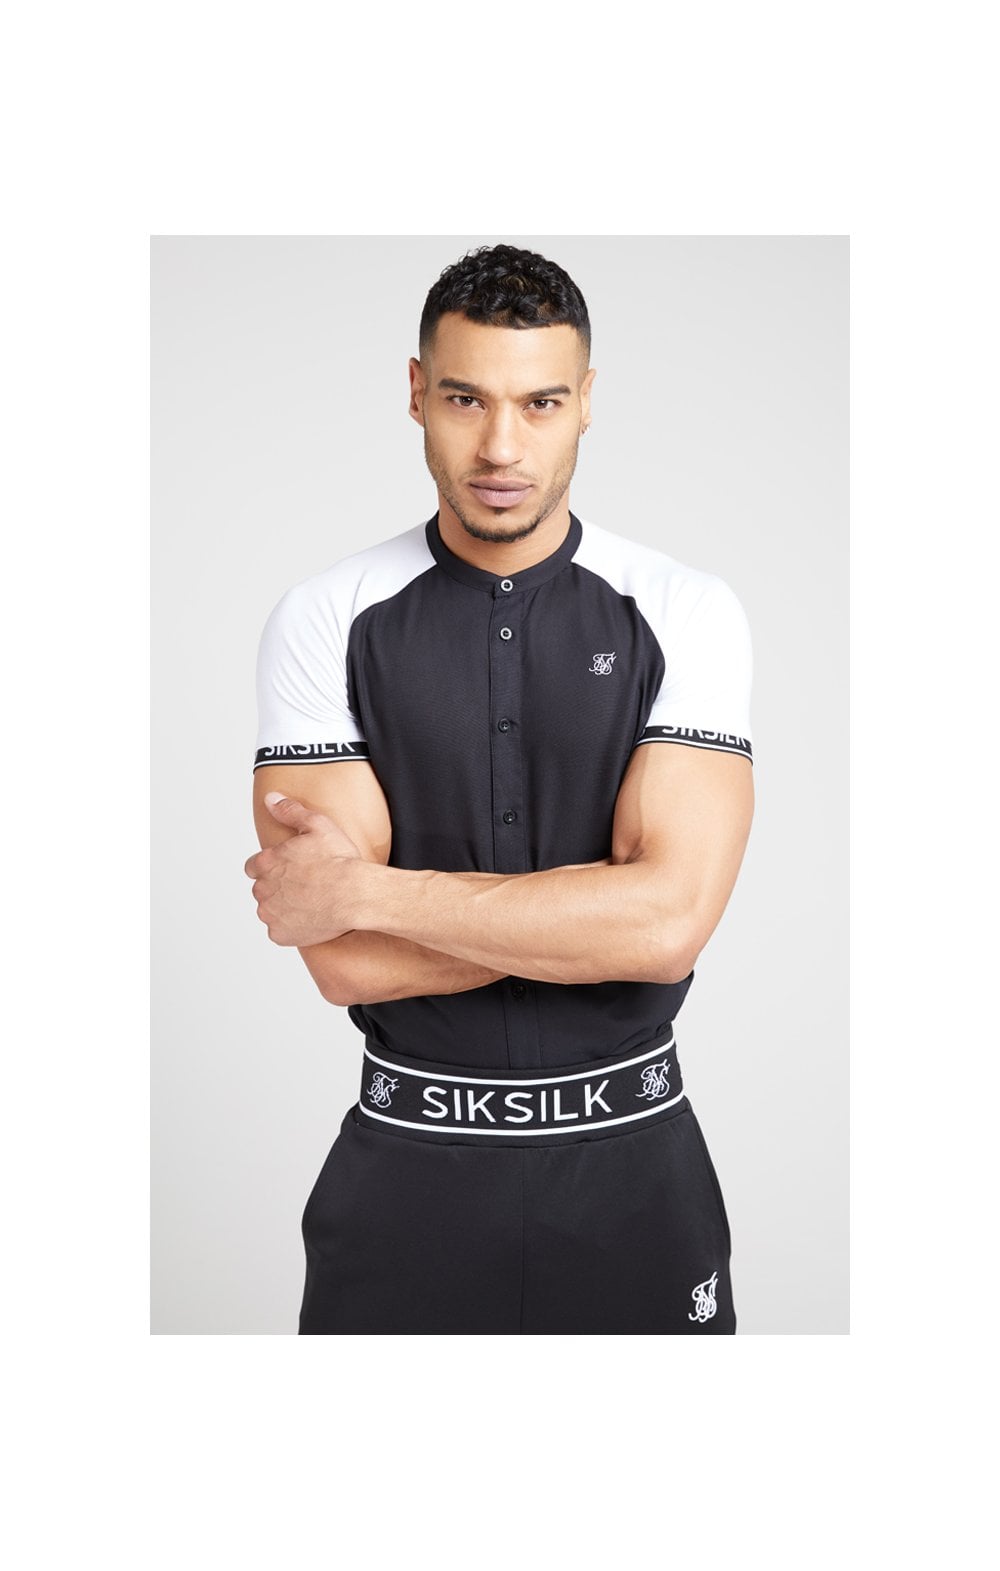 SikSilk S/S Oxford Raglan Tech Shirt - Black & White (2)